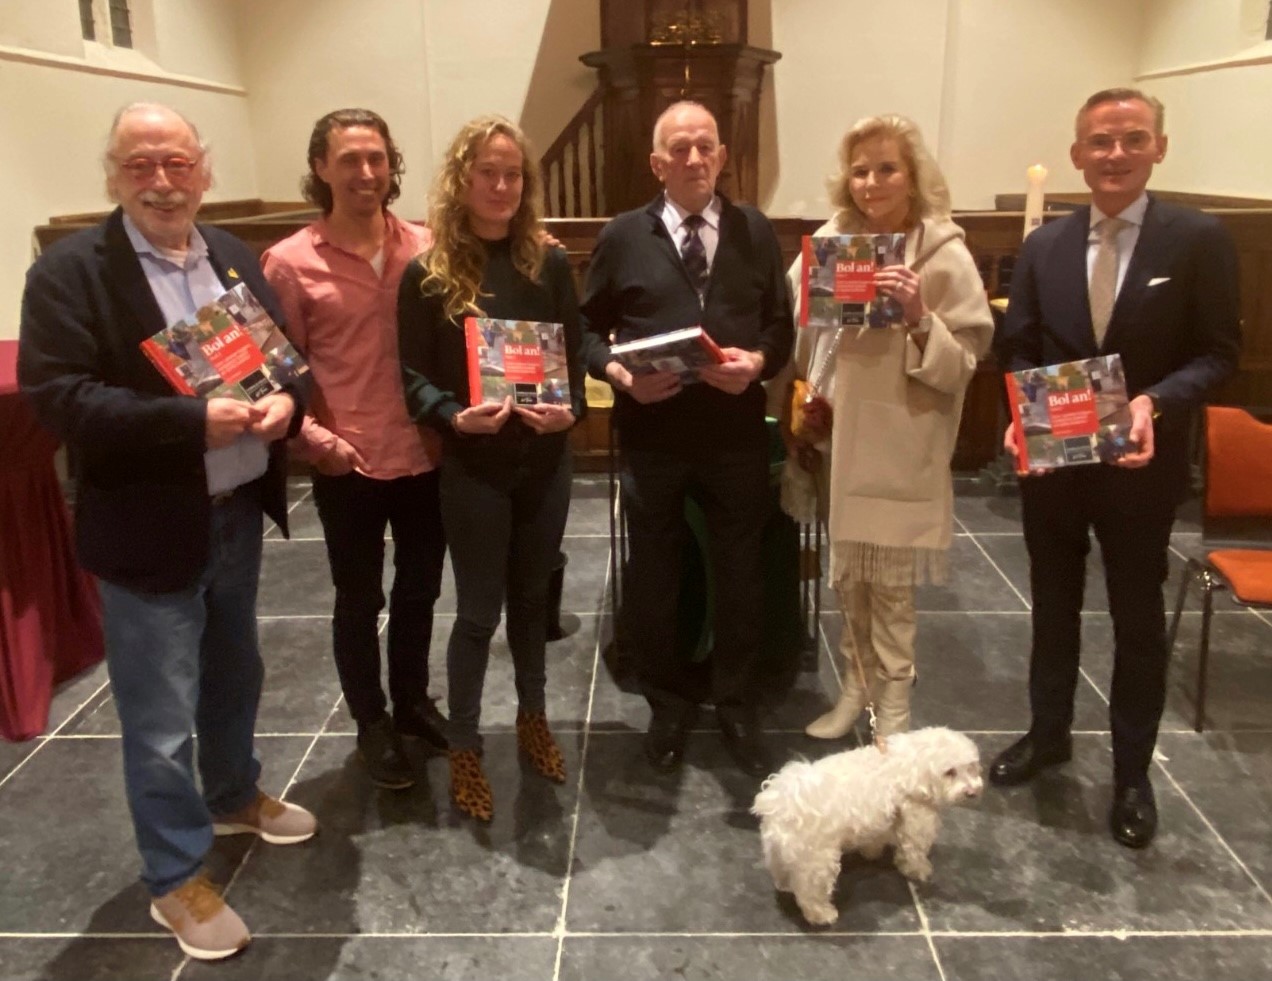 De burgemeester, Leo Janssen en 4 andere mensen met het boek in hun handen